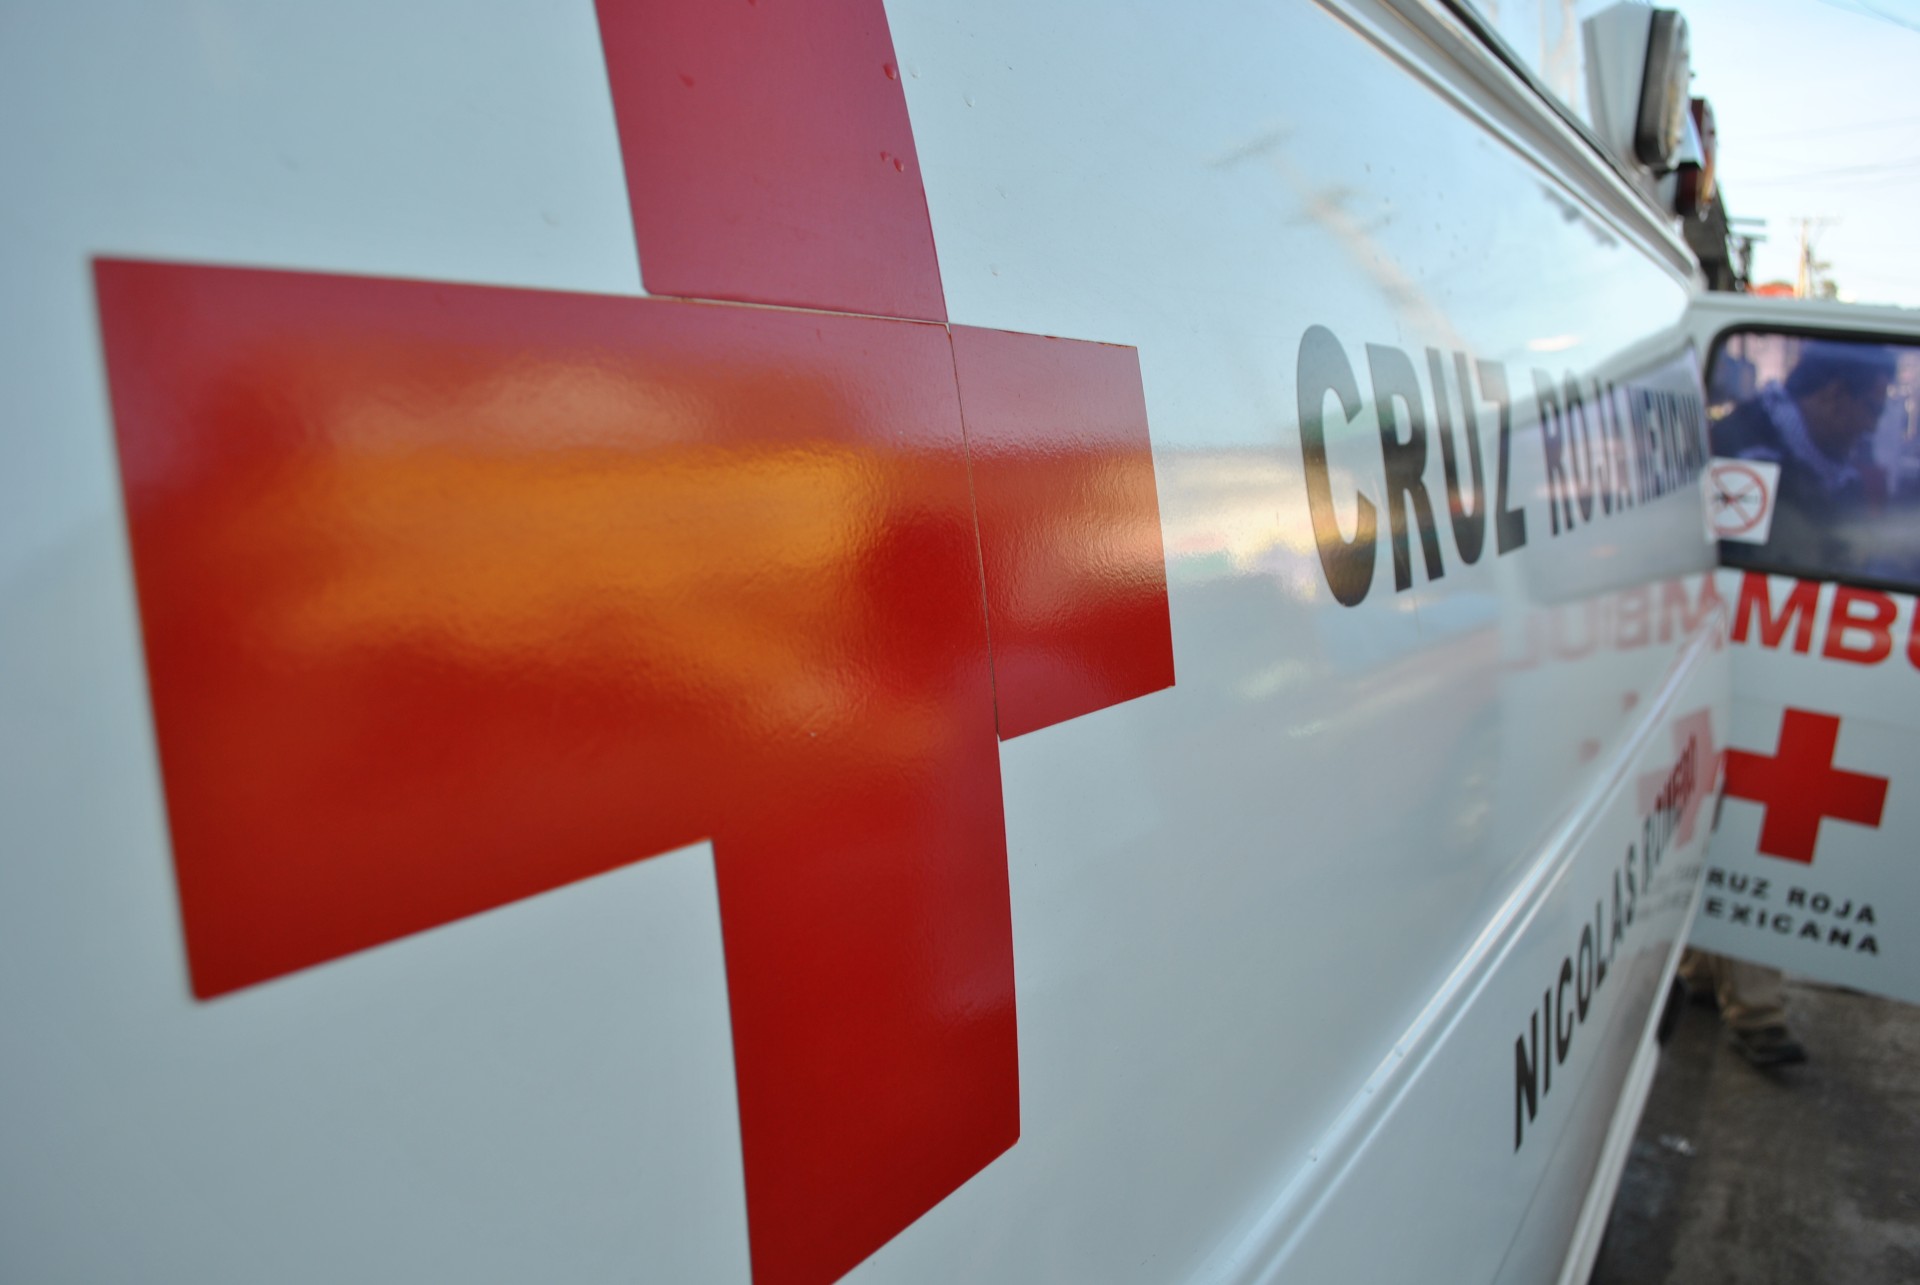 Inicia nueva gestión en Cruz Roja Mexicana Tepeaca